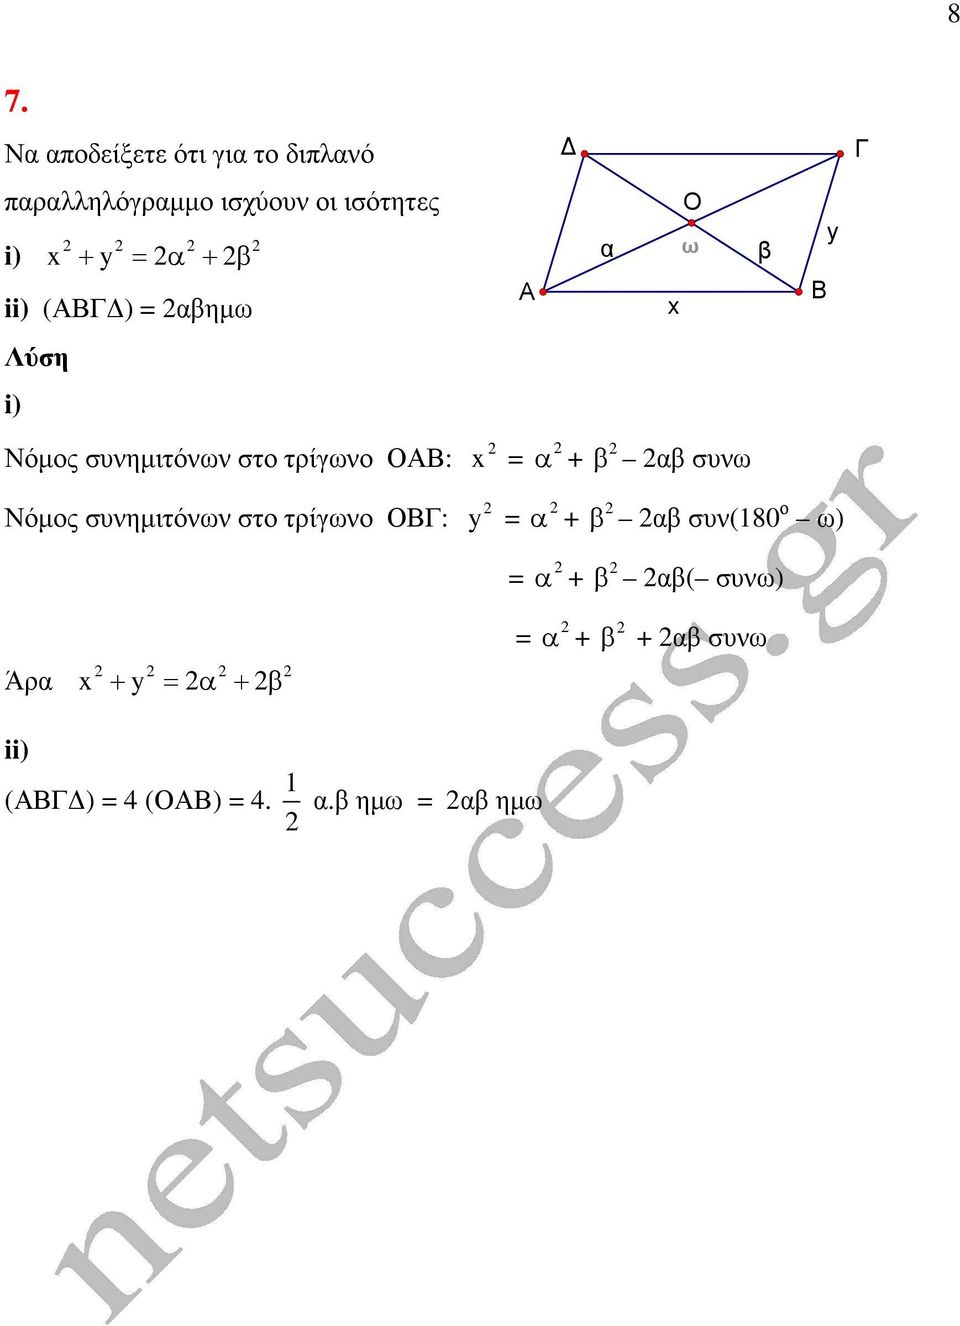 τρίγωνο Ο: Νόµος συνηµιτόνων στο τρίγωνο Ο: x y + + β β συνω β β